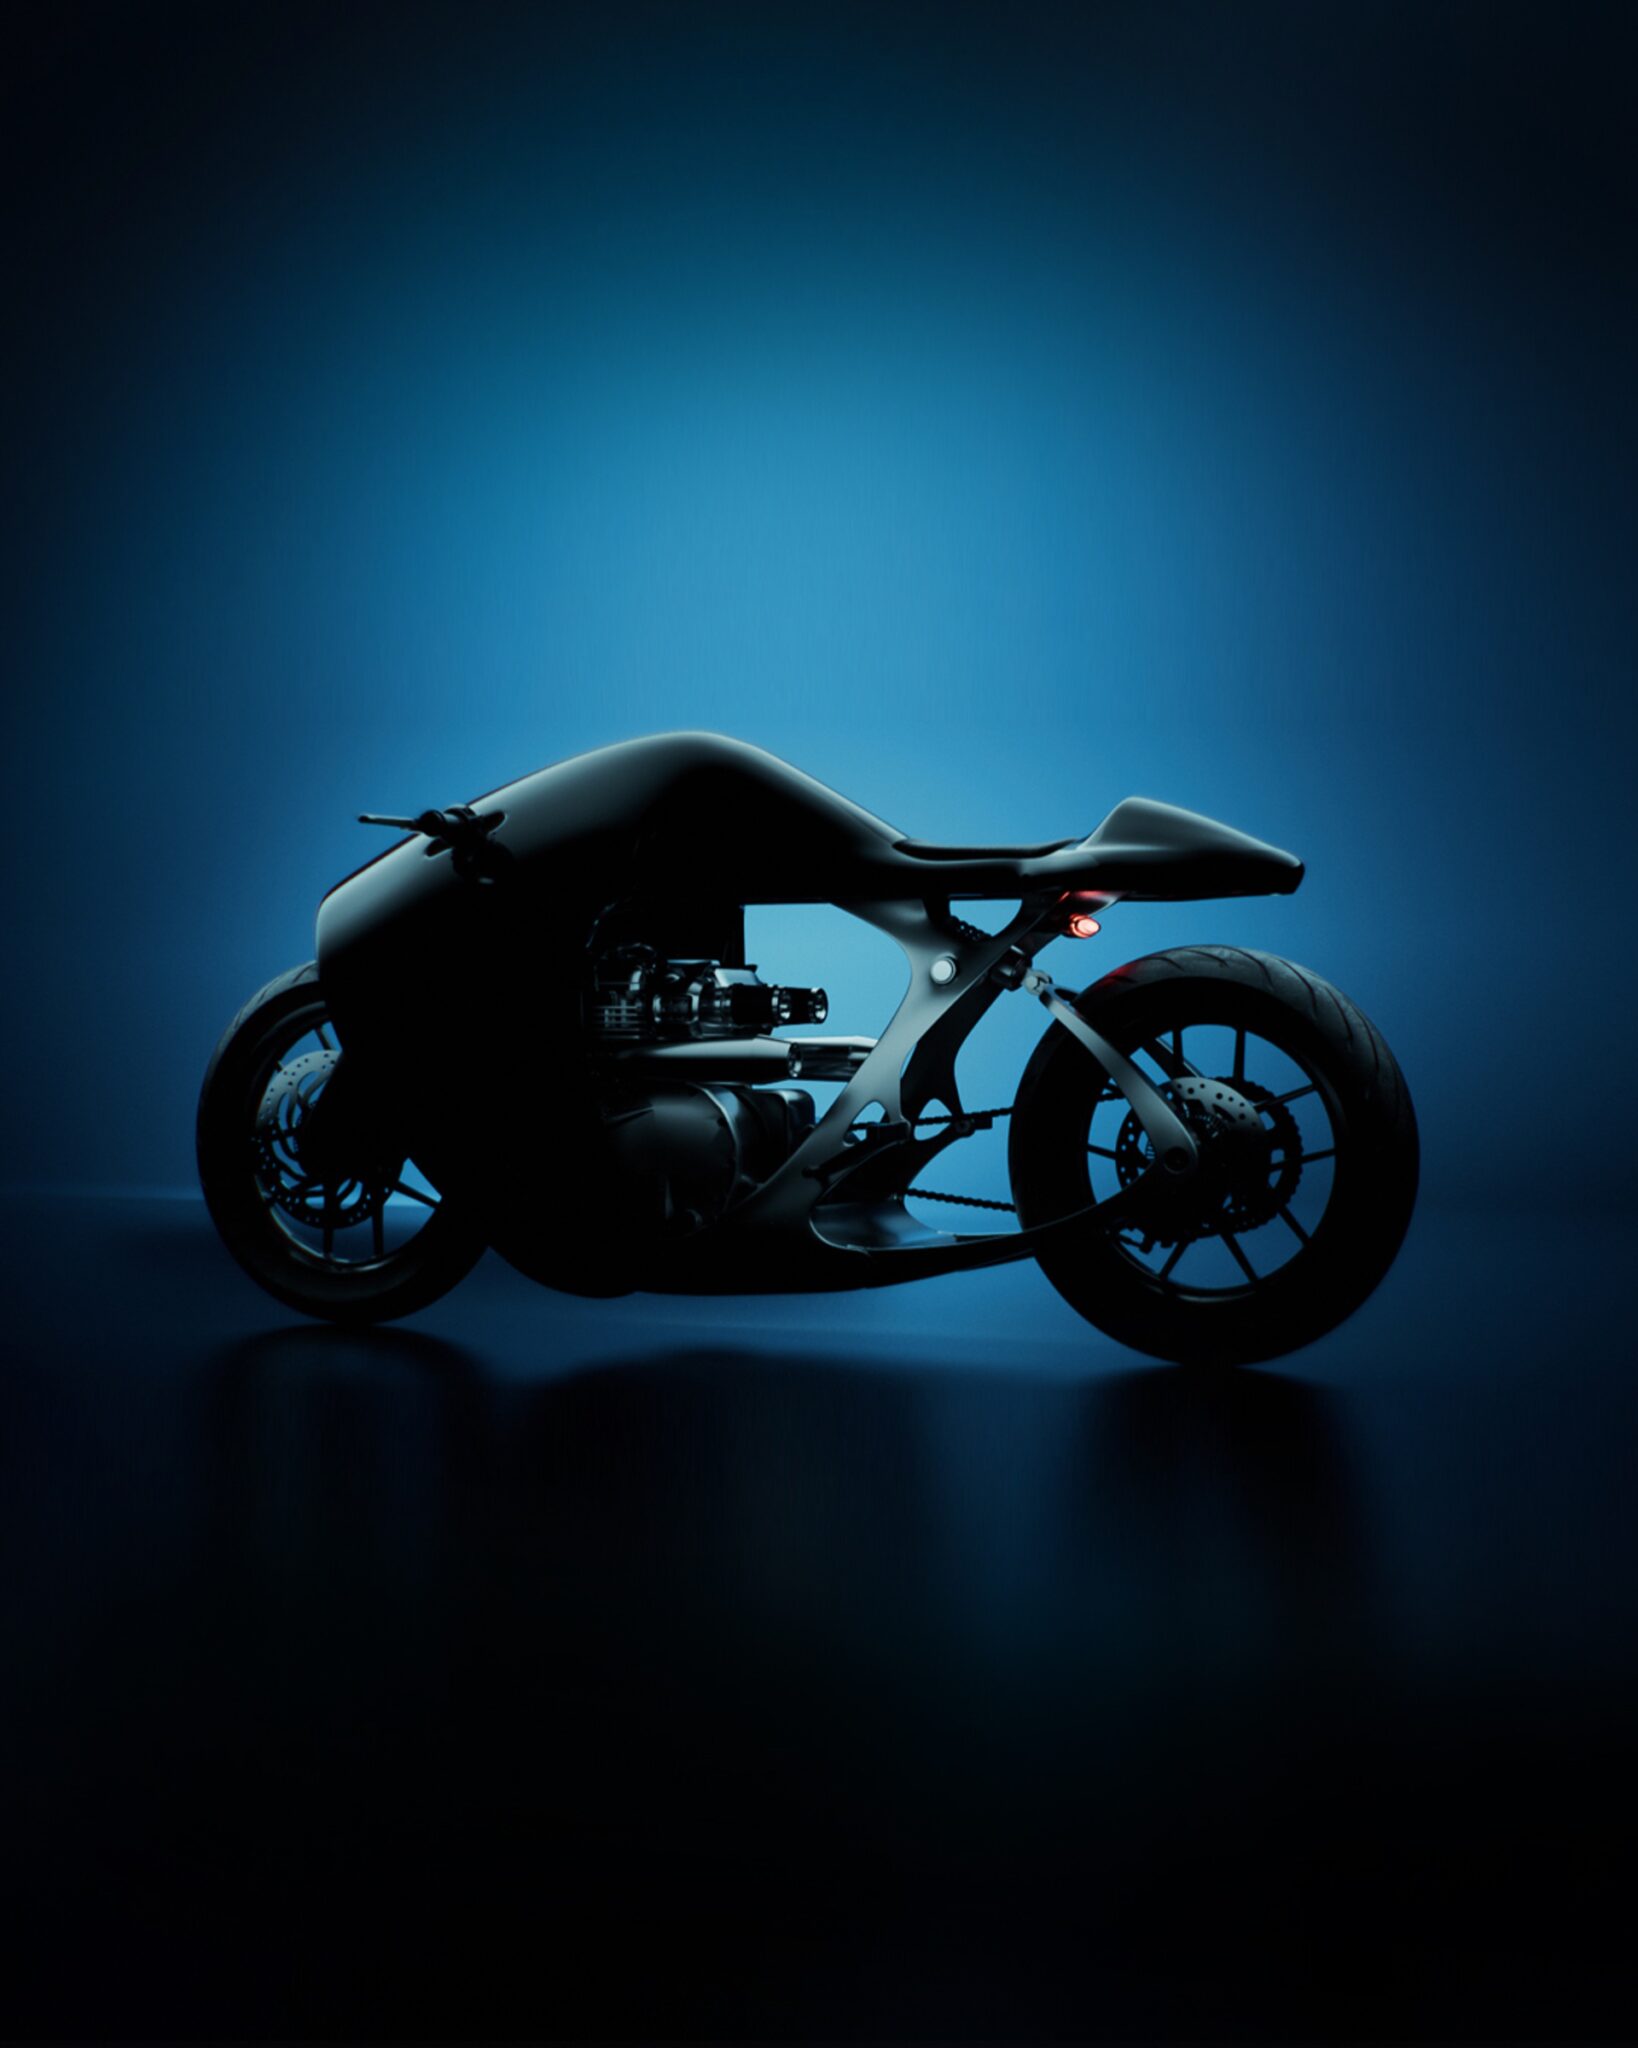 Bandit9 Supermarine Custom Racer motorcycle in dimly lit showroom